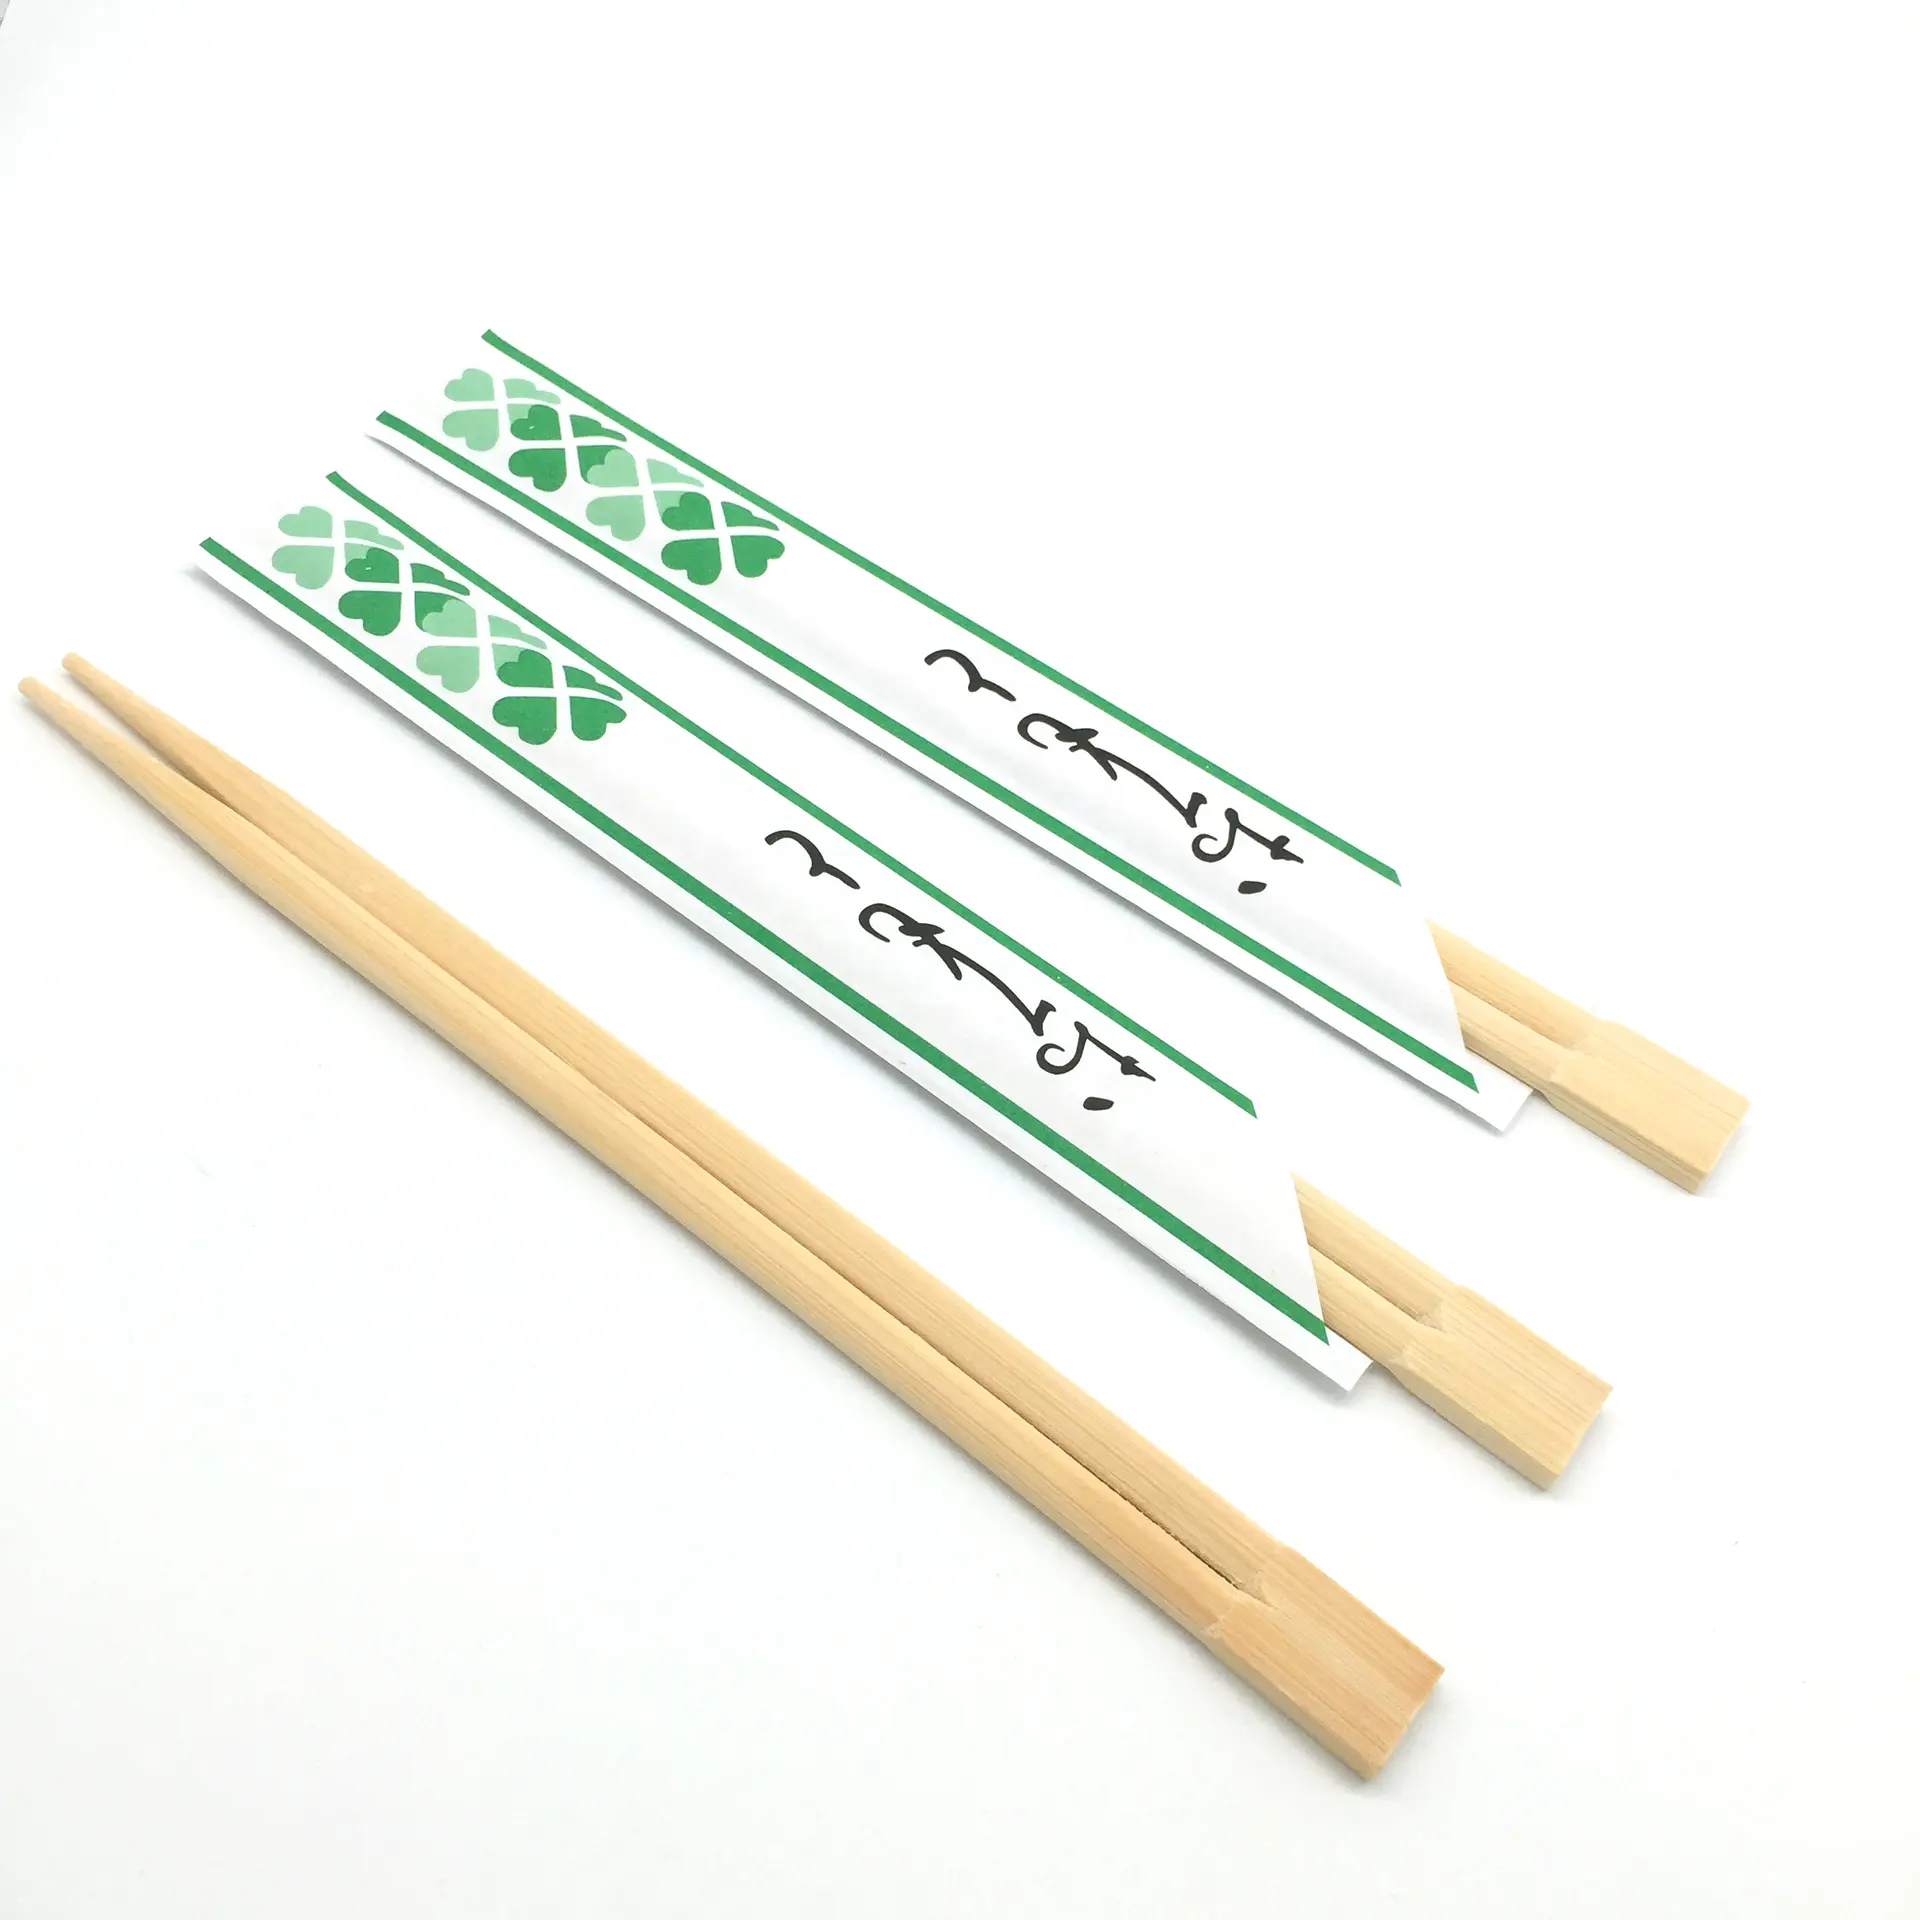 Individuell gravierte einweg-Bambus-Holz-Obstückstäbchen umwickelte umweltfreundliche Obstückstäbchen aus Restaurantpapier